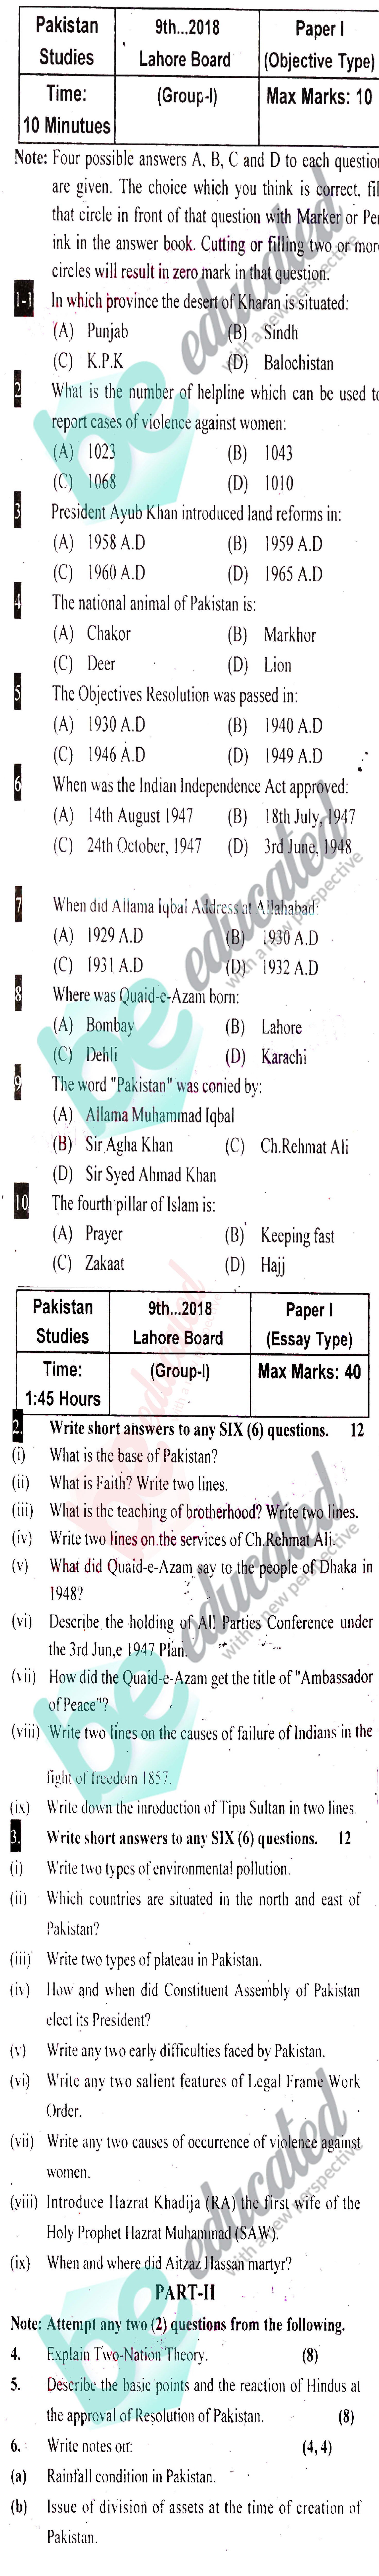 Pak Studies 9th class Past Paper Group 1 BISE Lahore 2018